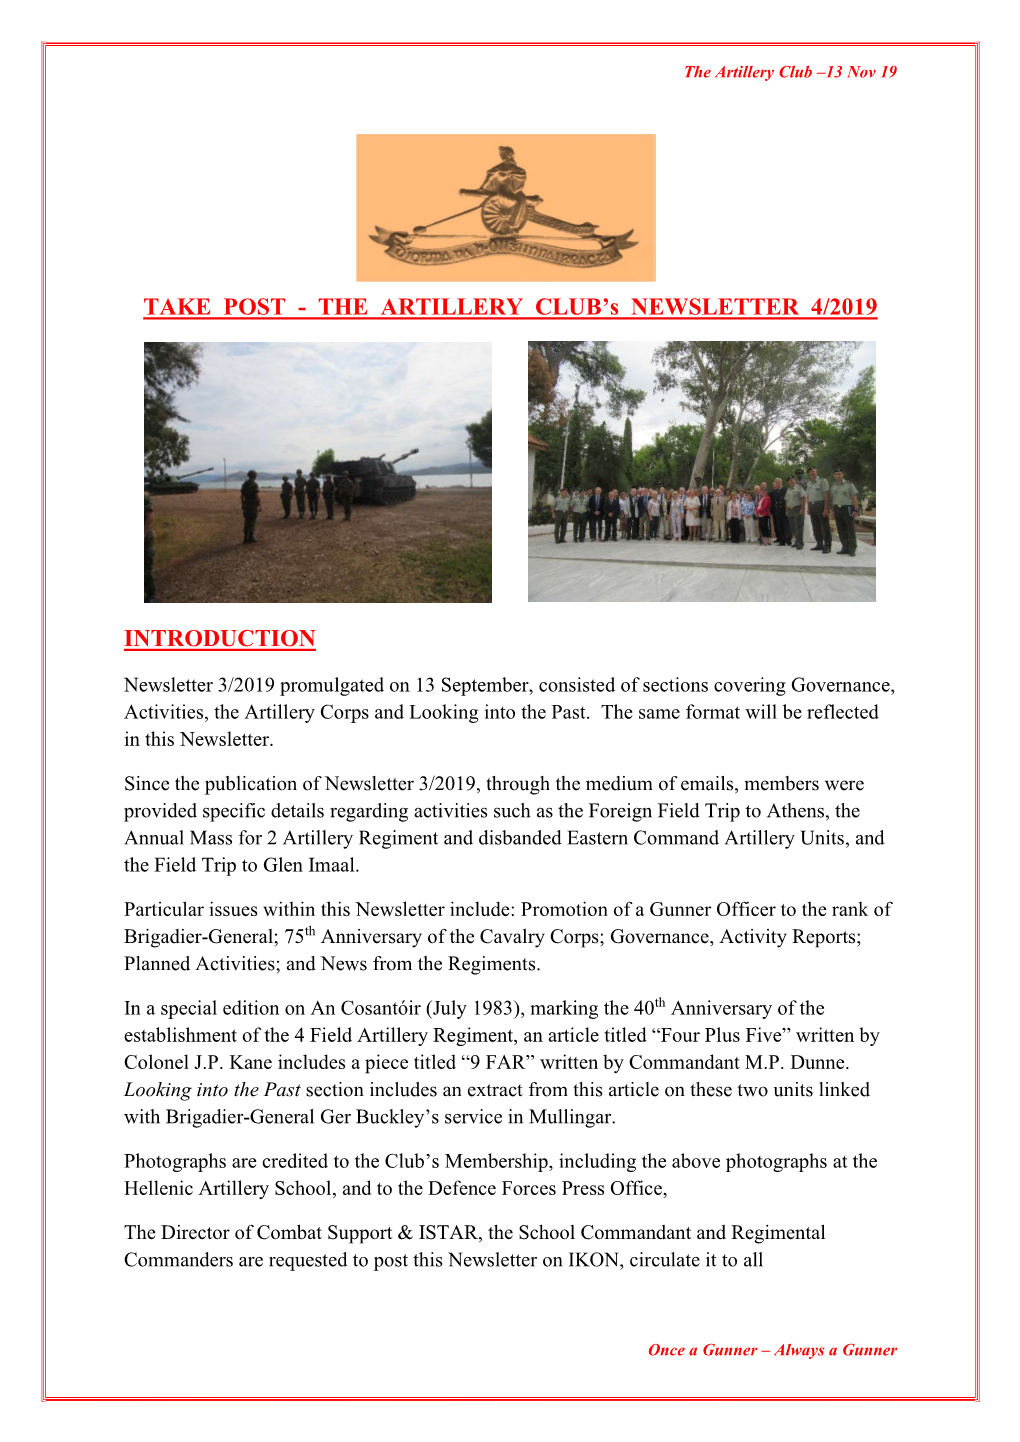 Artillery Club Newsletter 4 of 2019 (13 Nov